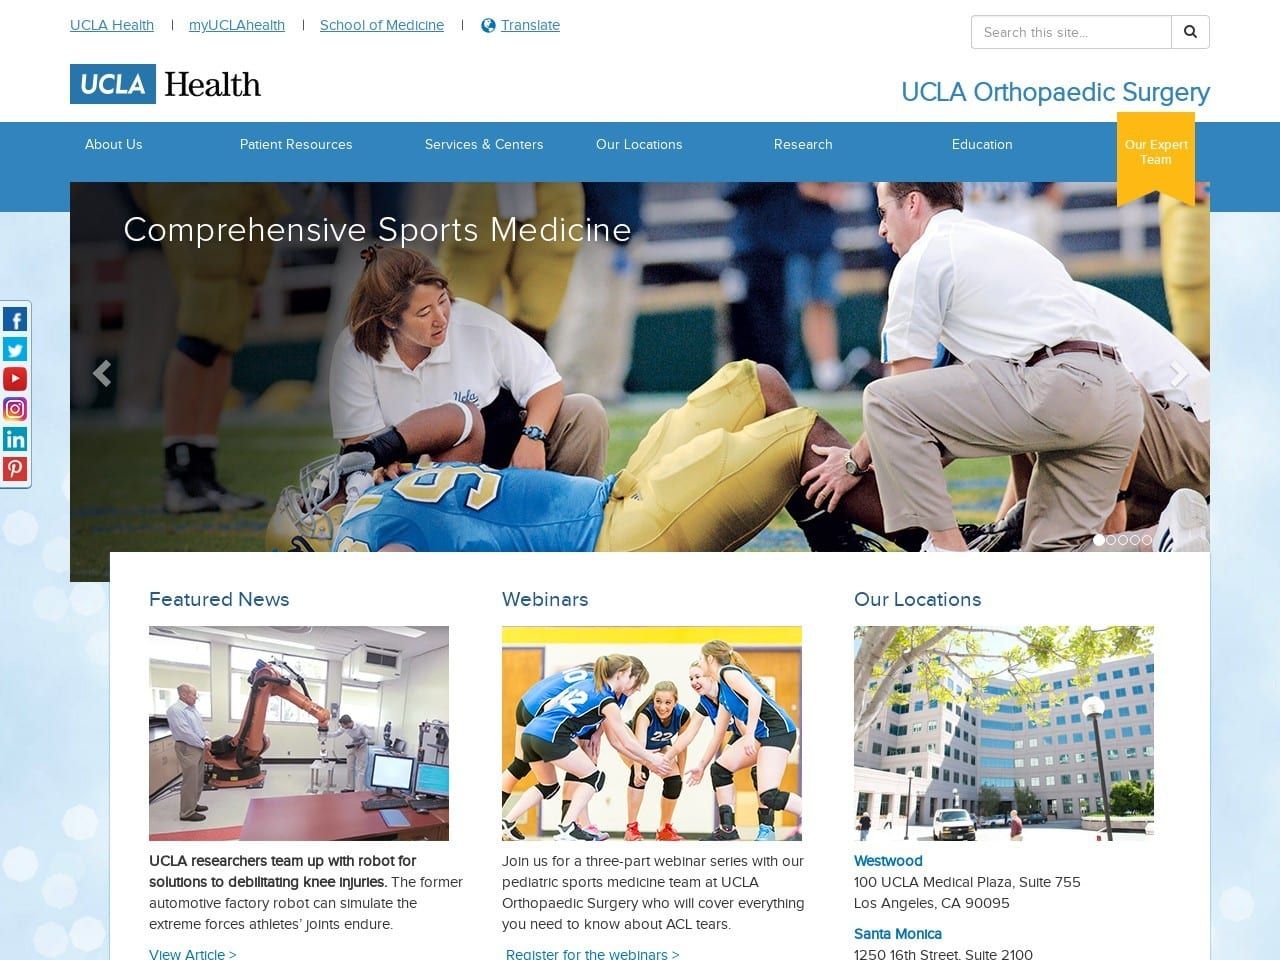 Santa Monica Website Screenshot from ortho.ucla.edu